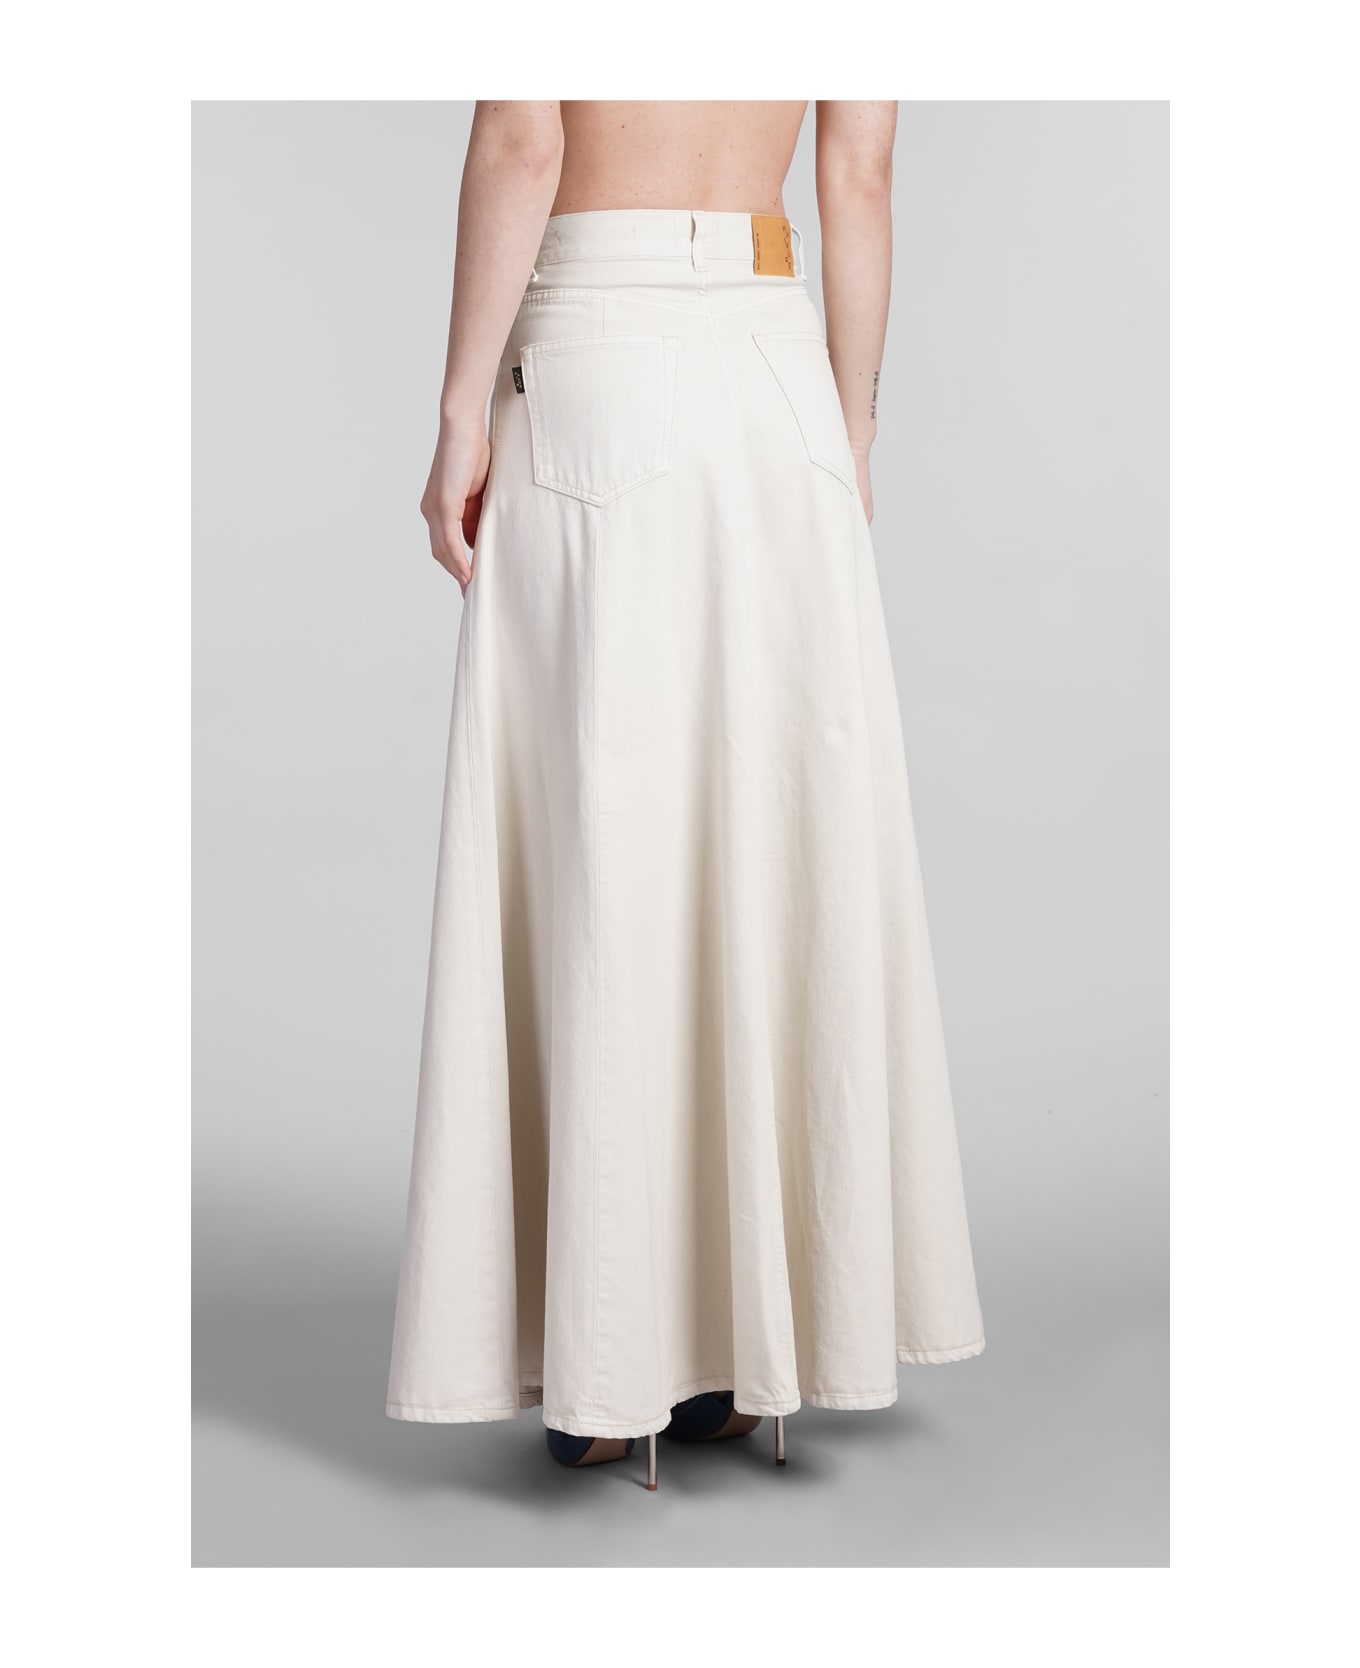 Haikure Serenity Skirt In Beige Cotton - beige